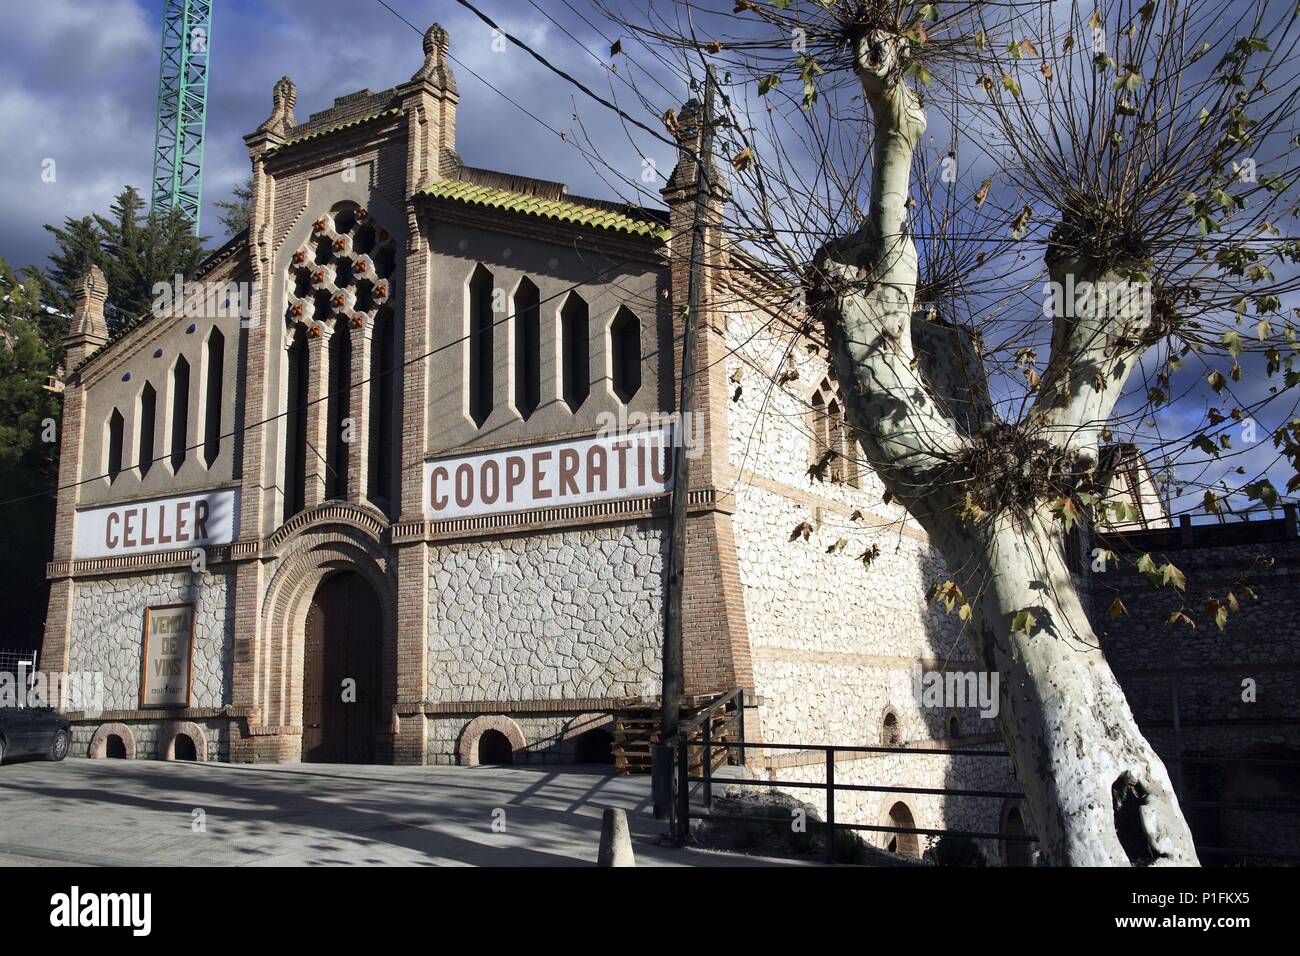 Spagna - Catalogna - Priorat (distretto) - Tarragona. Cornudella de Montsant; bodega / celler cooperatiu (arquitecto César Martinell). Foto Stock